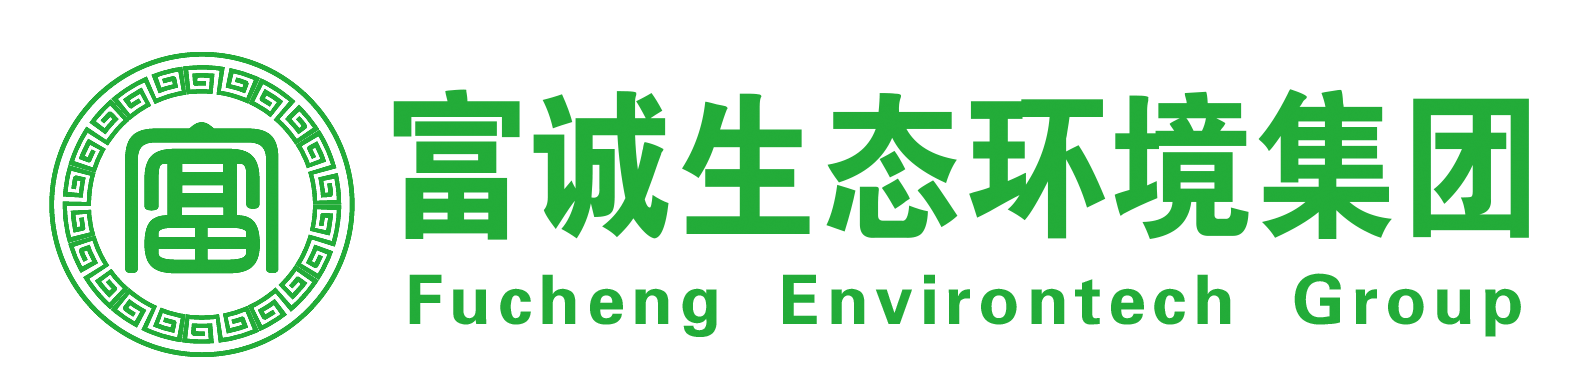 江西富诚生态环境科技集团有限公司